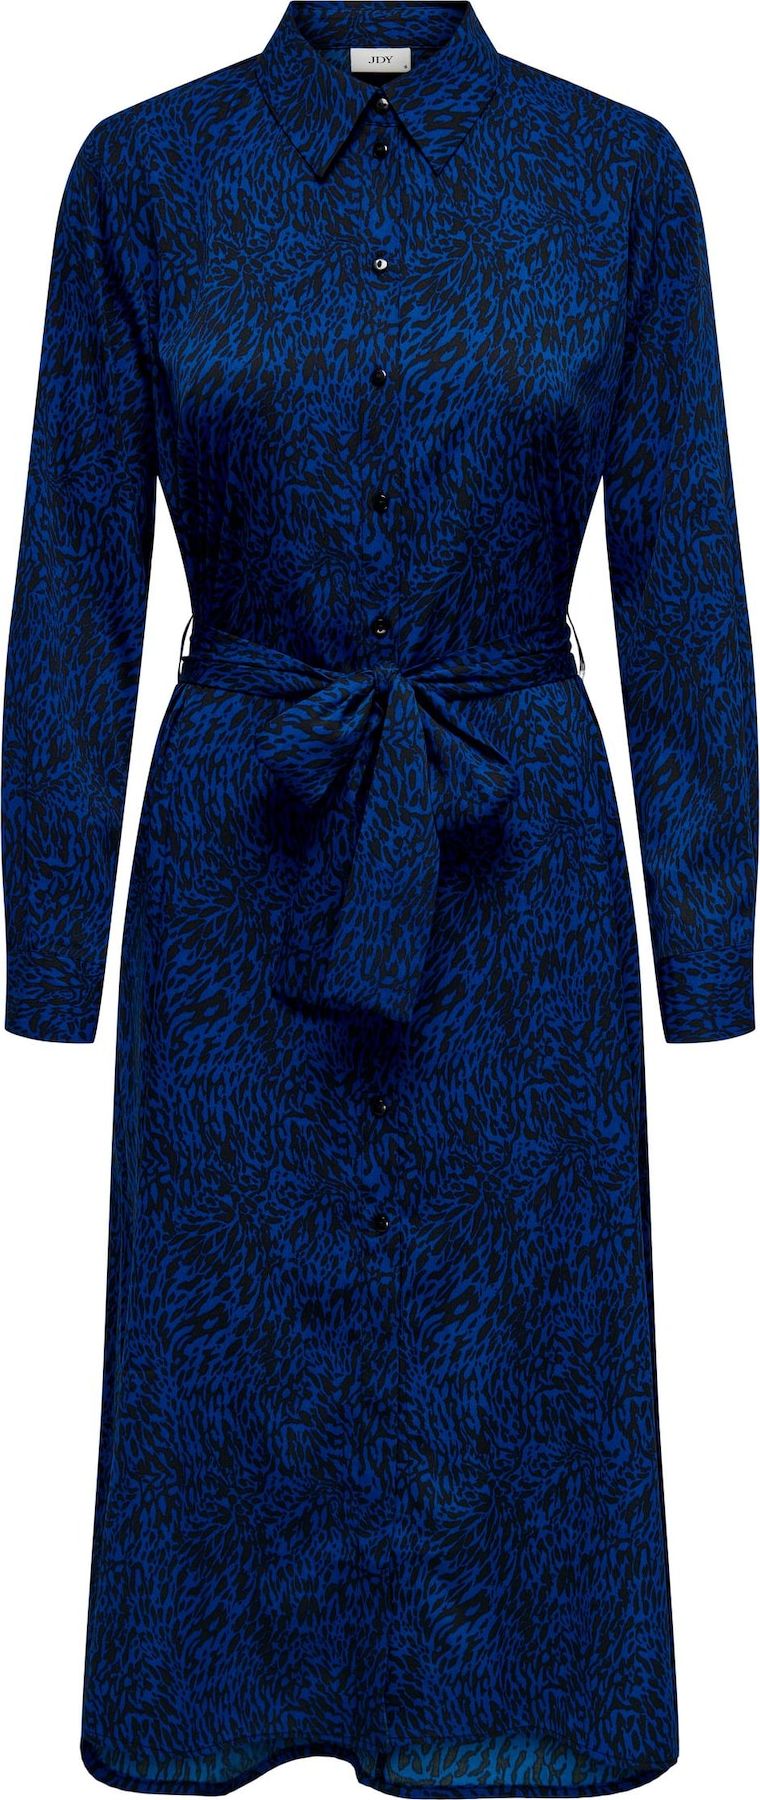 Košilové šaty 'CAINE' JDY královská modrá / černá